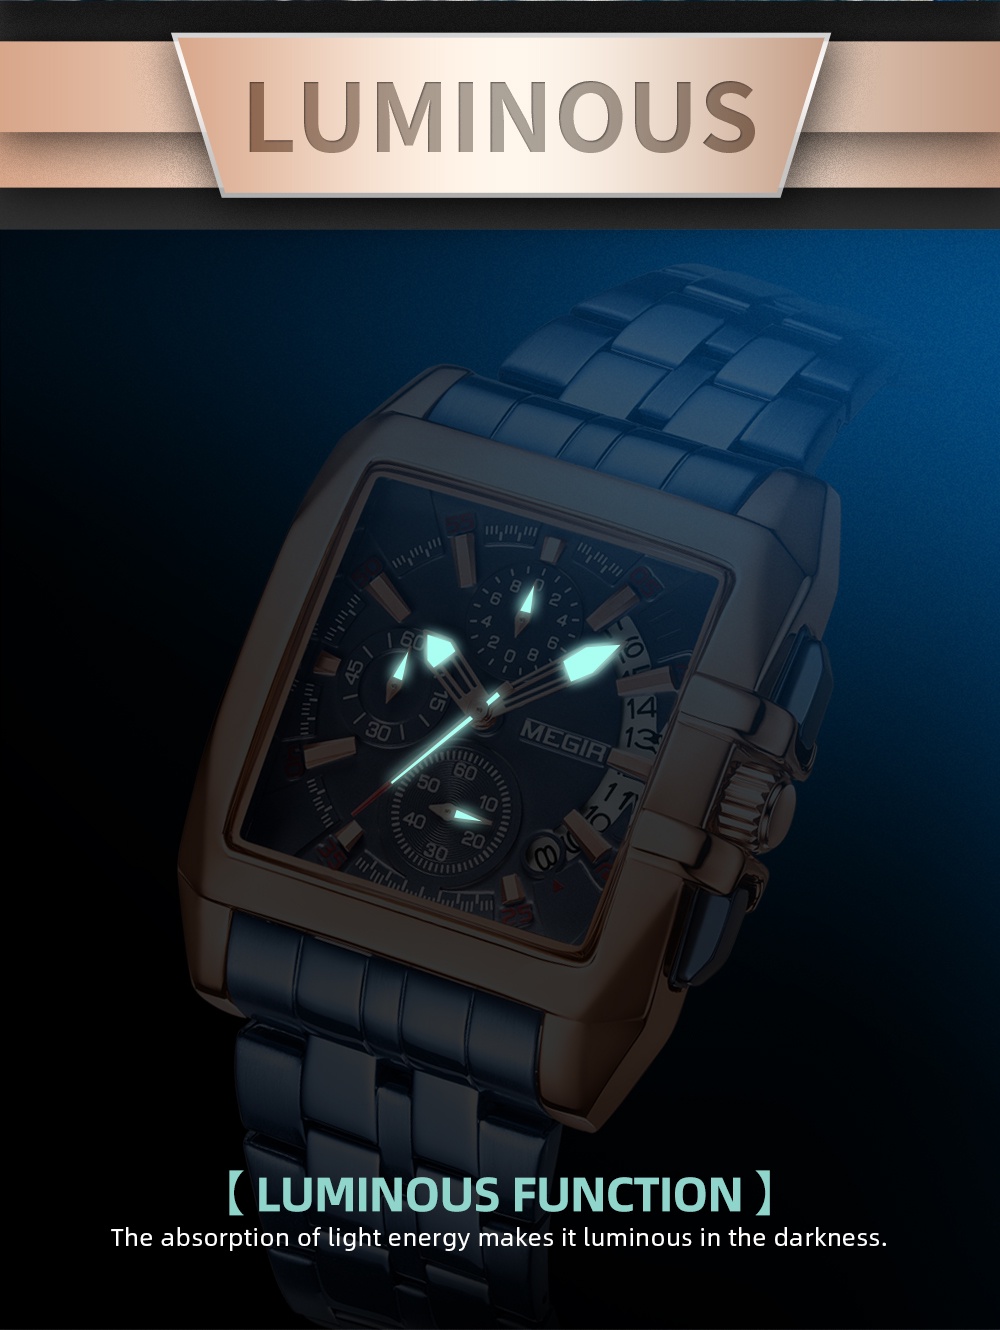 ภาพประกอบของ MEGIR นาฬิกาควอตซ์ สไตล์ธุรกิจ สายสเตนเลส กันน้ำ